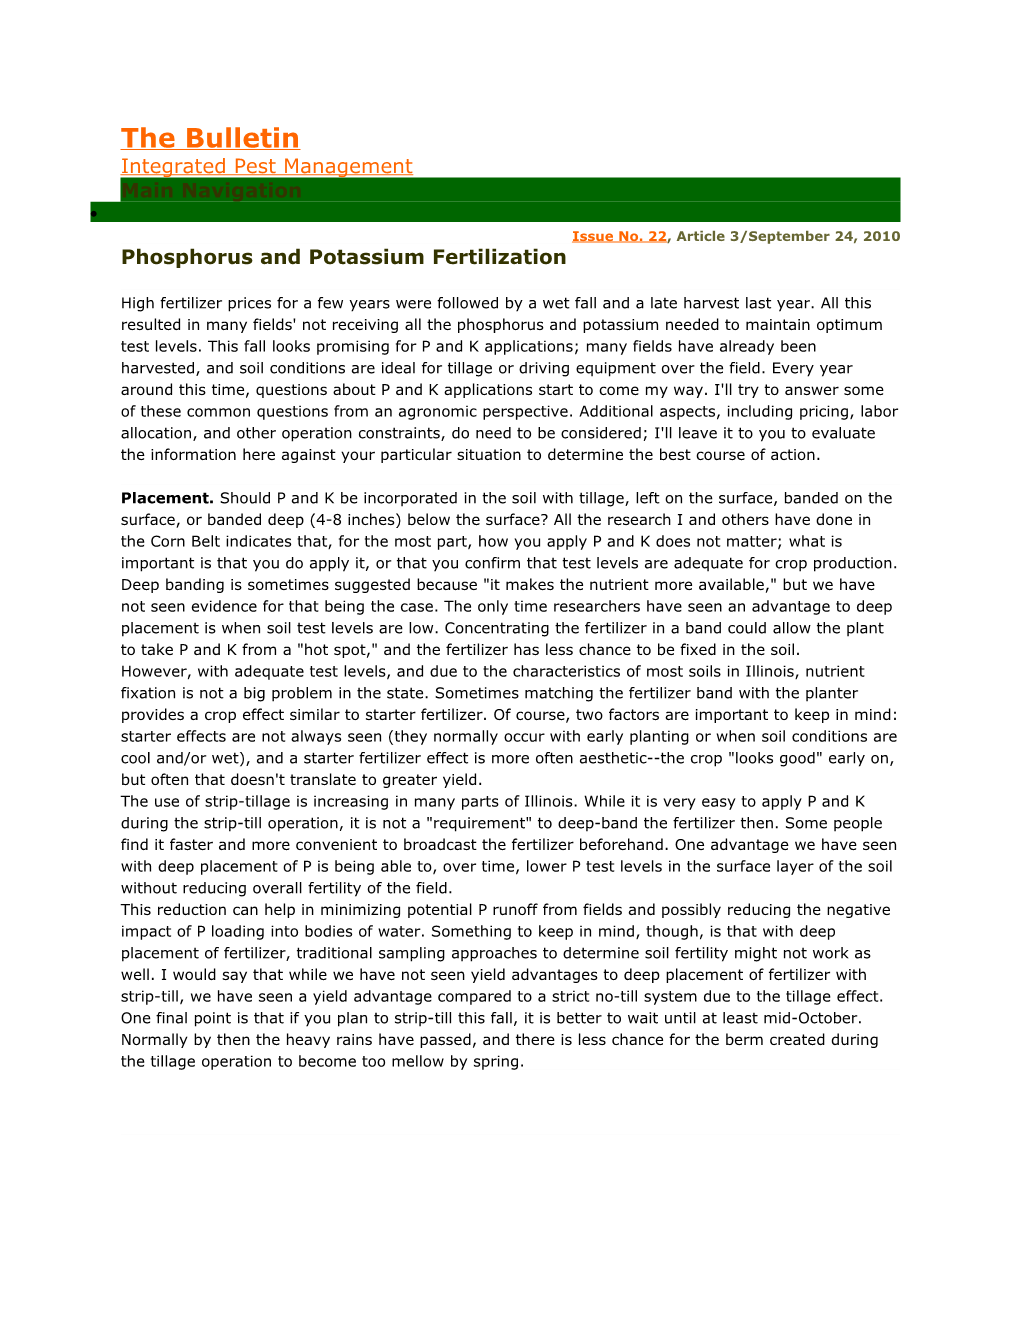 Phosphorus and Potassium Fertilization